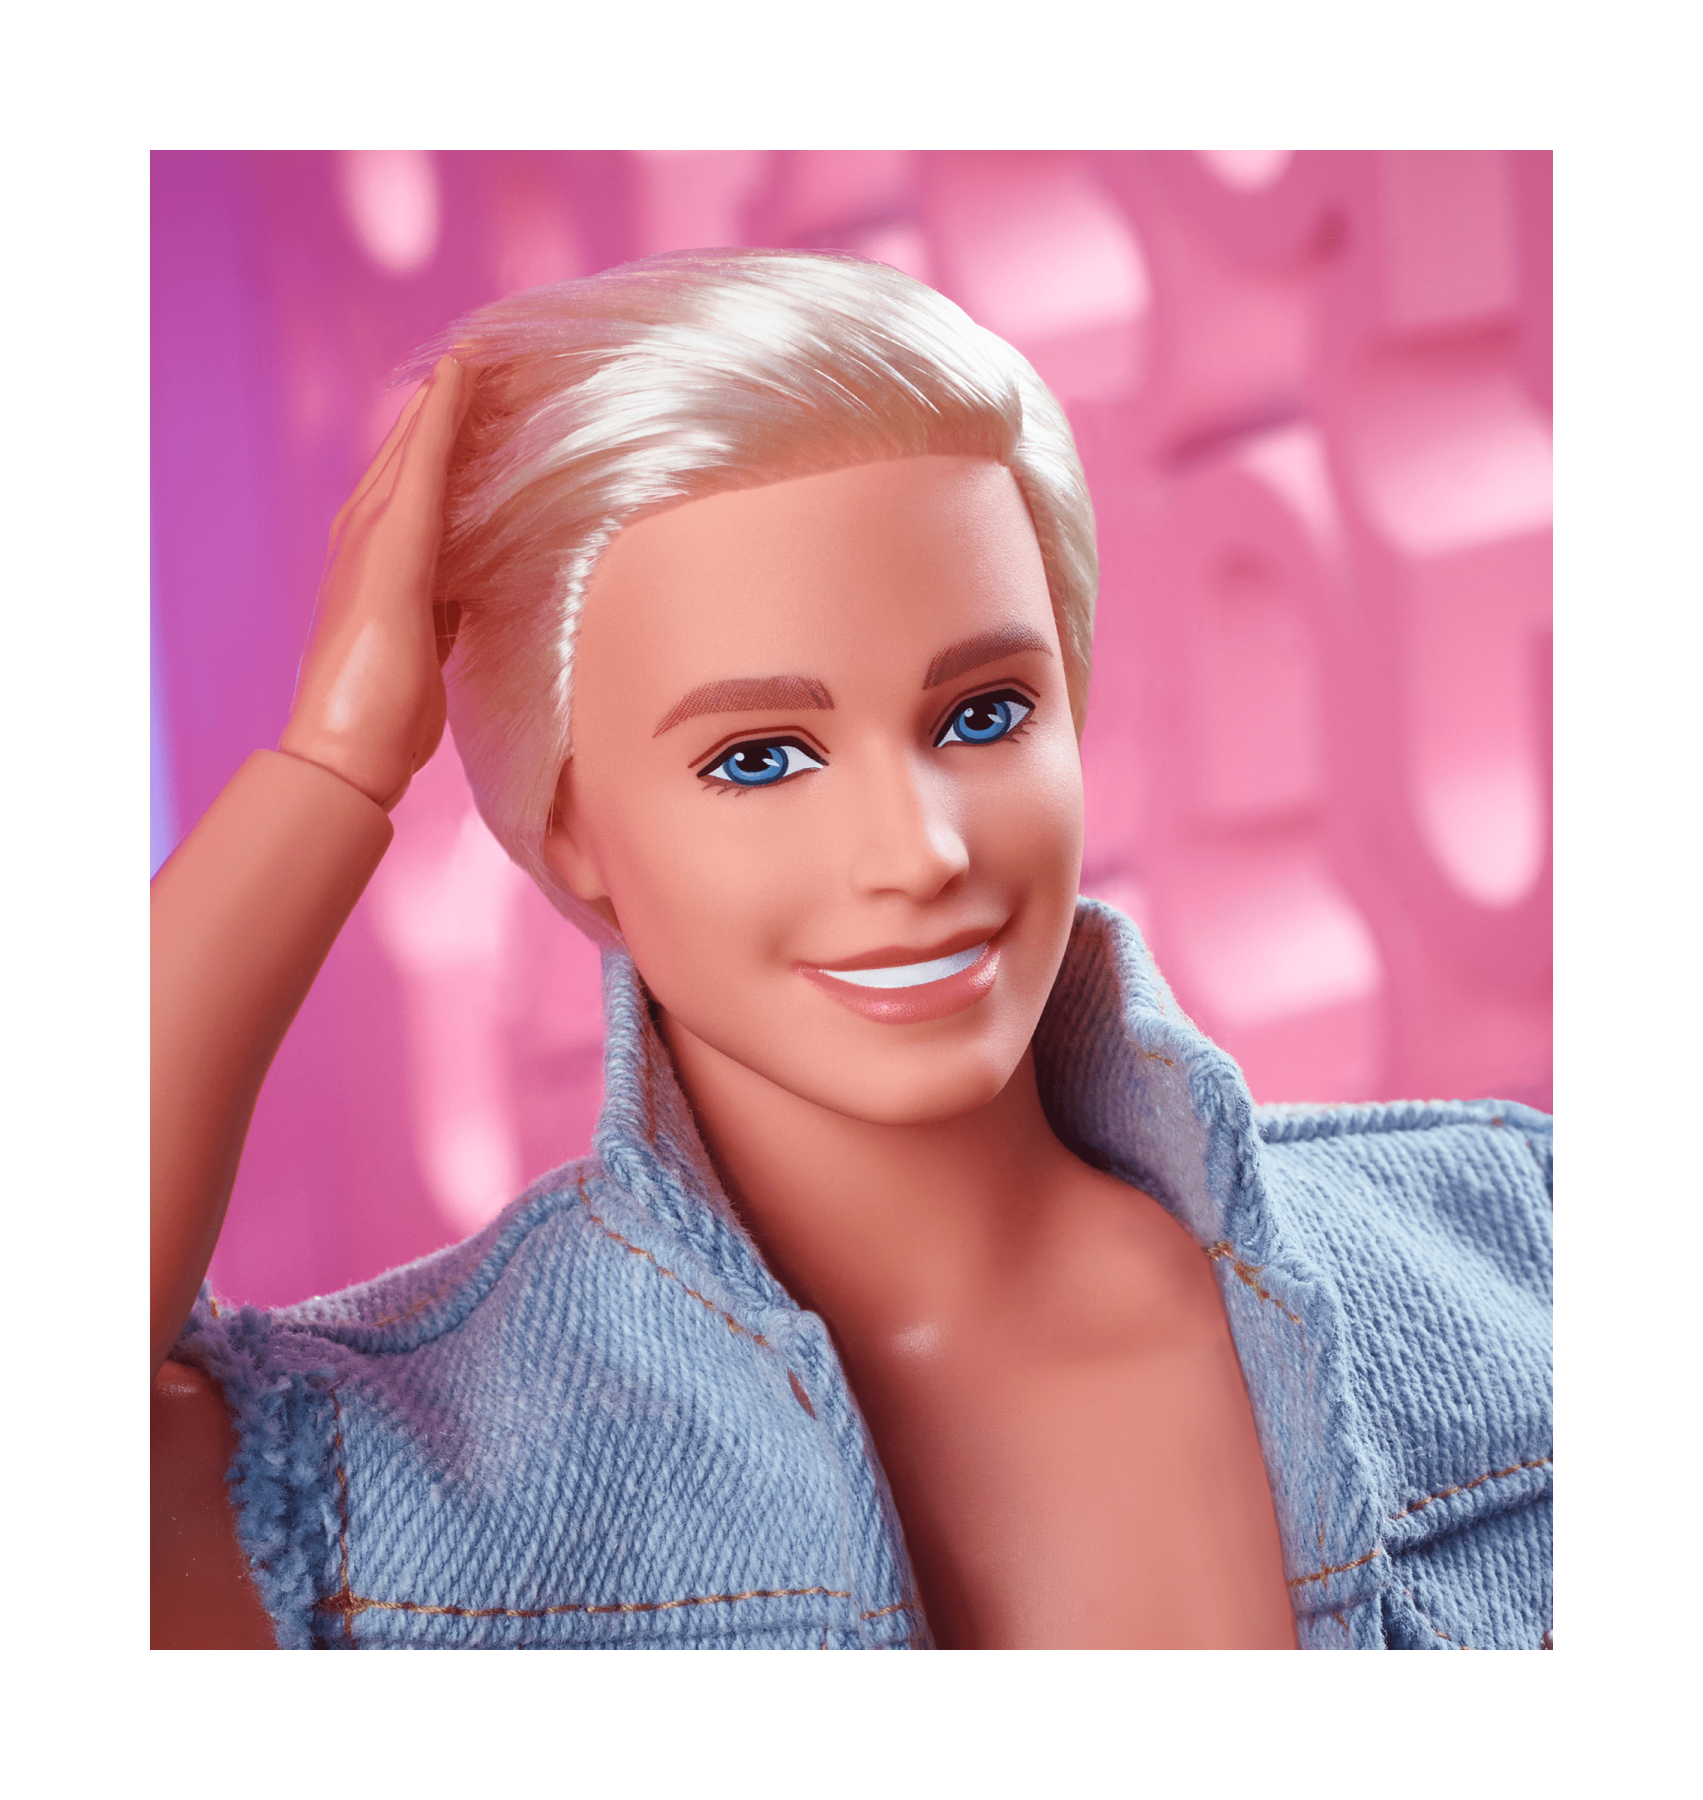 Barbie the movie - ken, bambola del film barbie da collezione con completo di jeans coordinato e boxer originale di ken, 3+ anni, hrf27 - Barbie